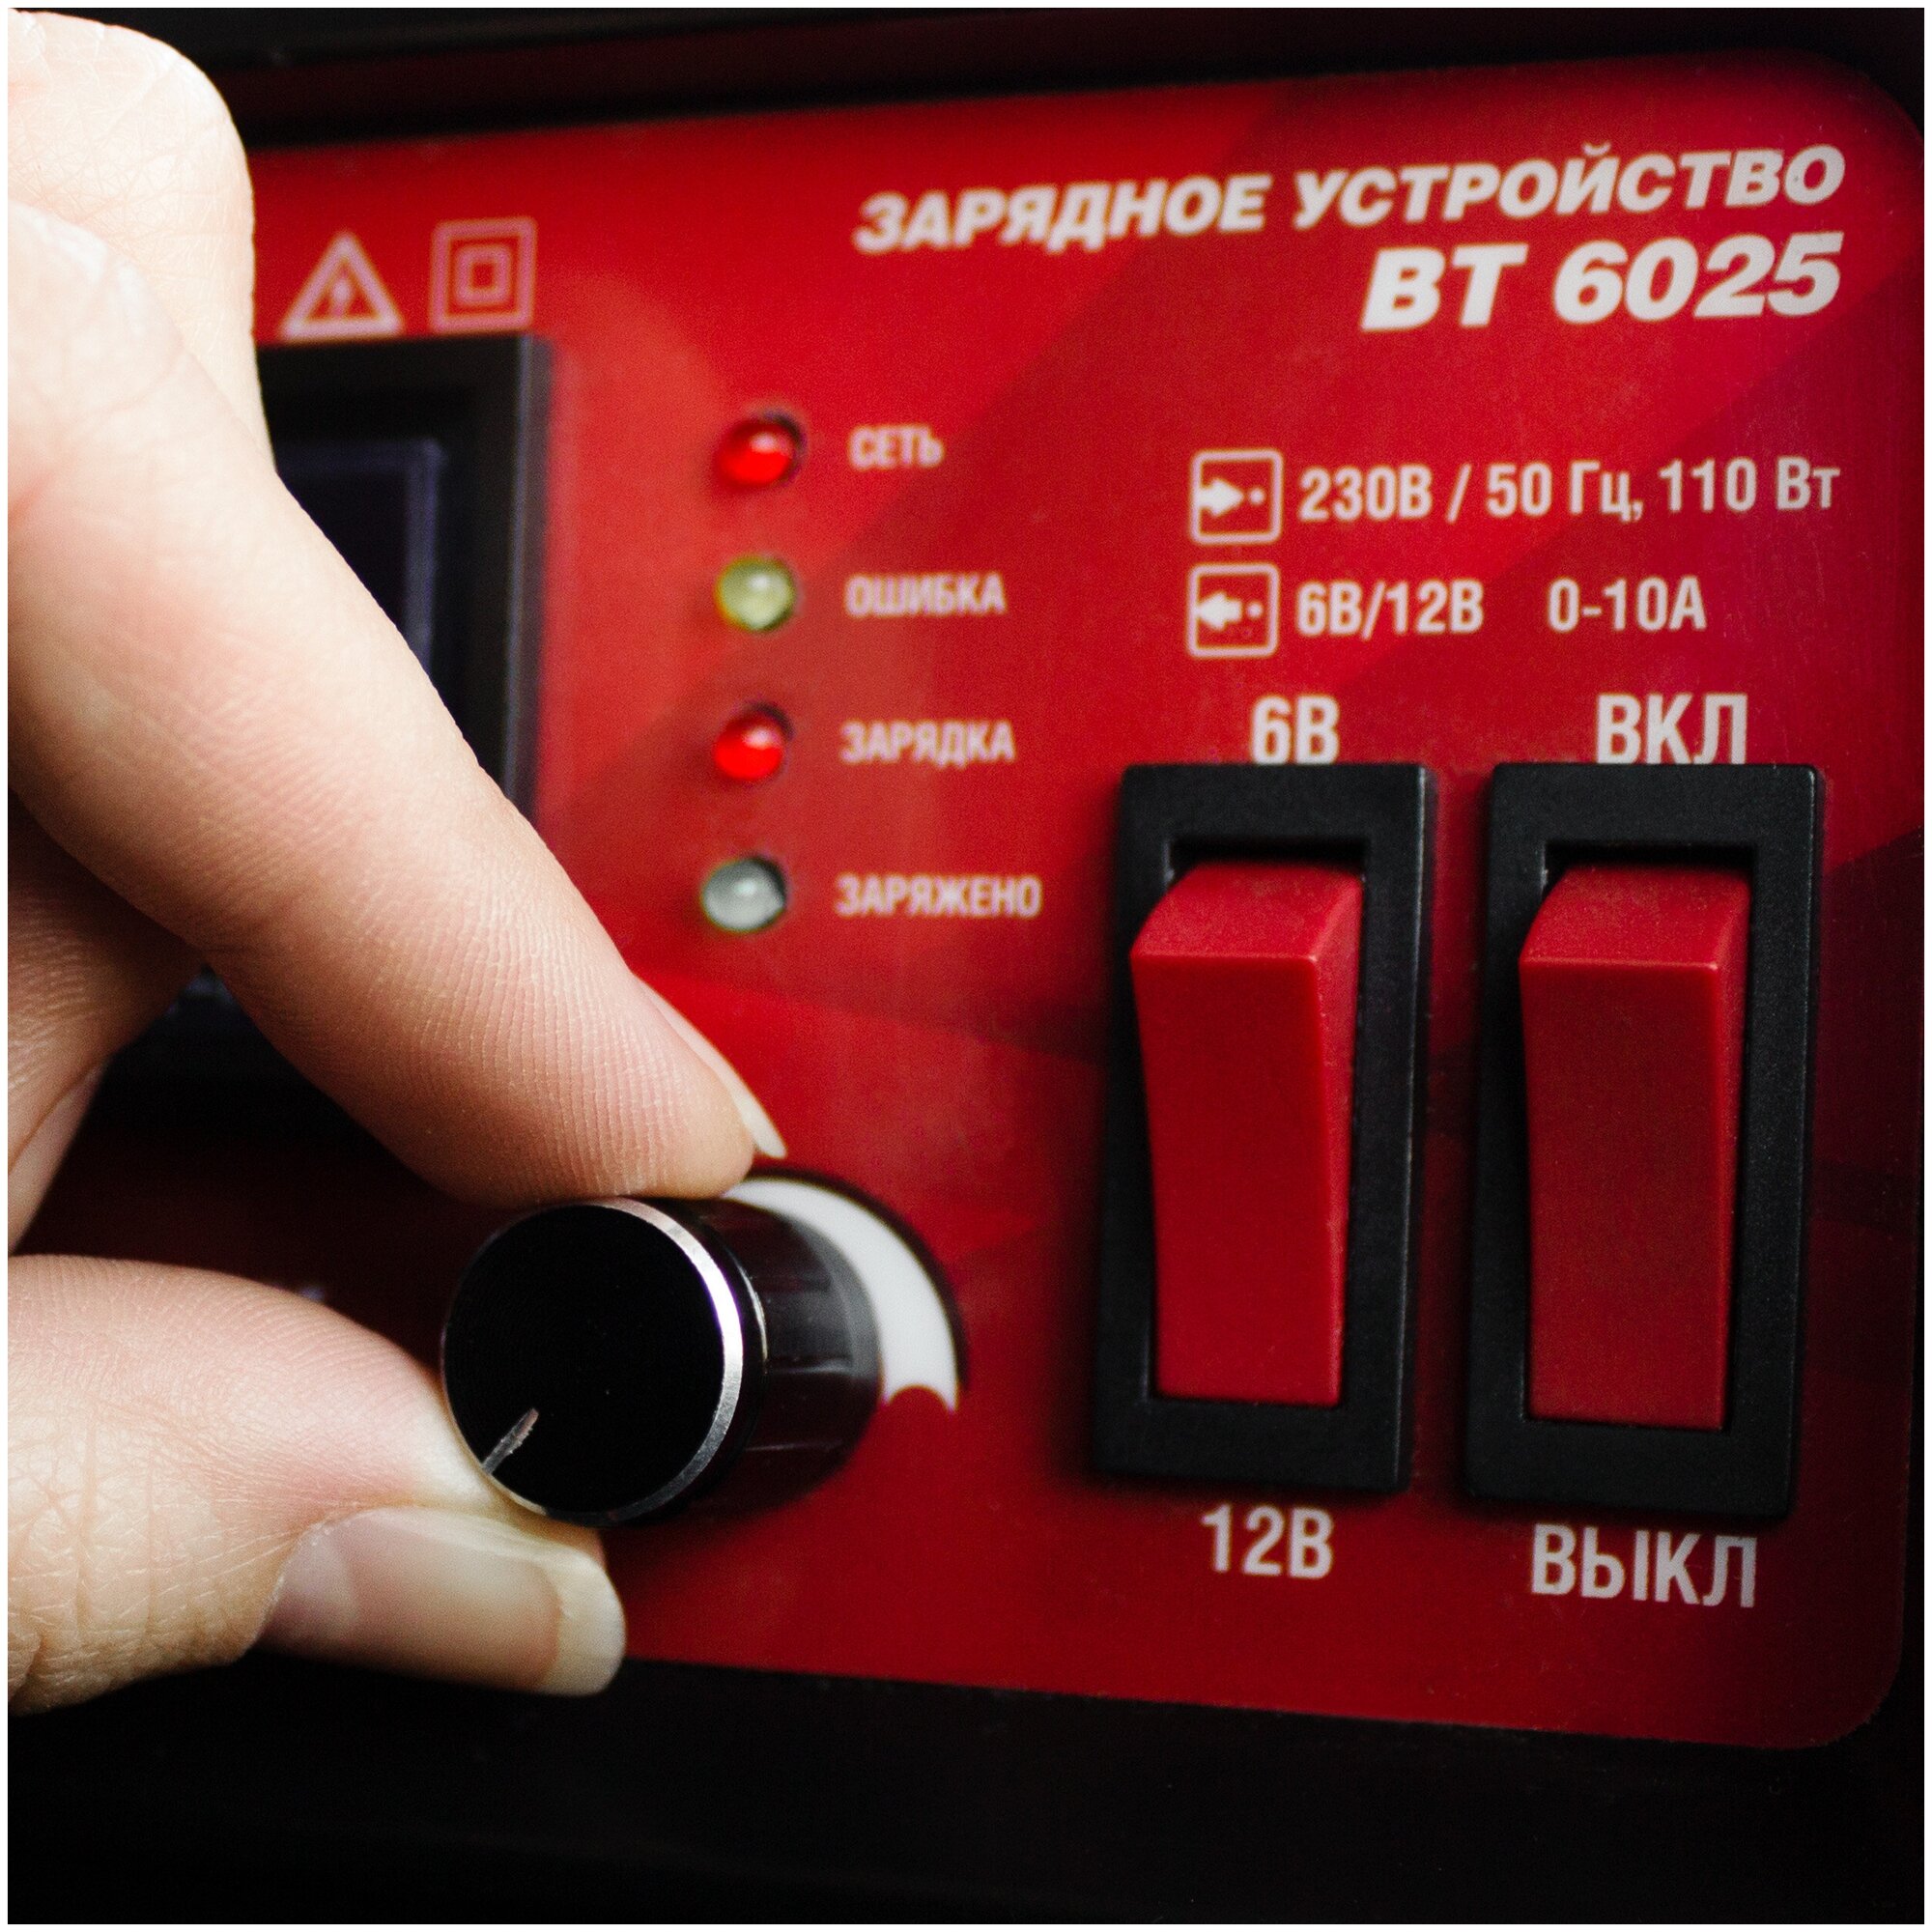 Зарядное устройство AVS Energy BT-6025 красный —  в интернет .